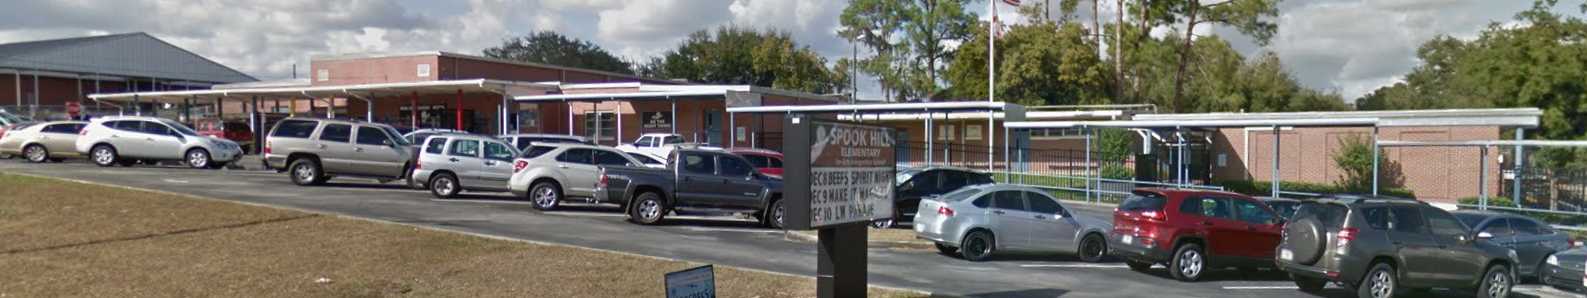 Spook Hill Elementary School